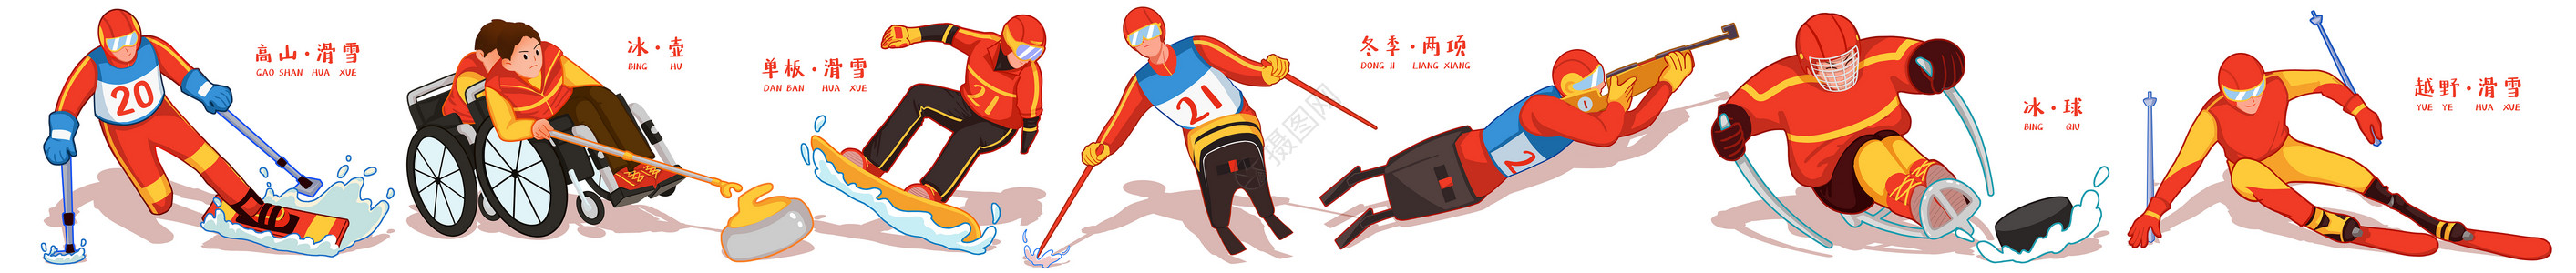 全国残疾日冬季滑雪项目卡通插画合集插画